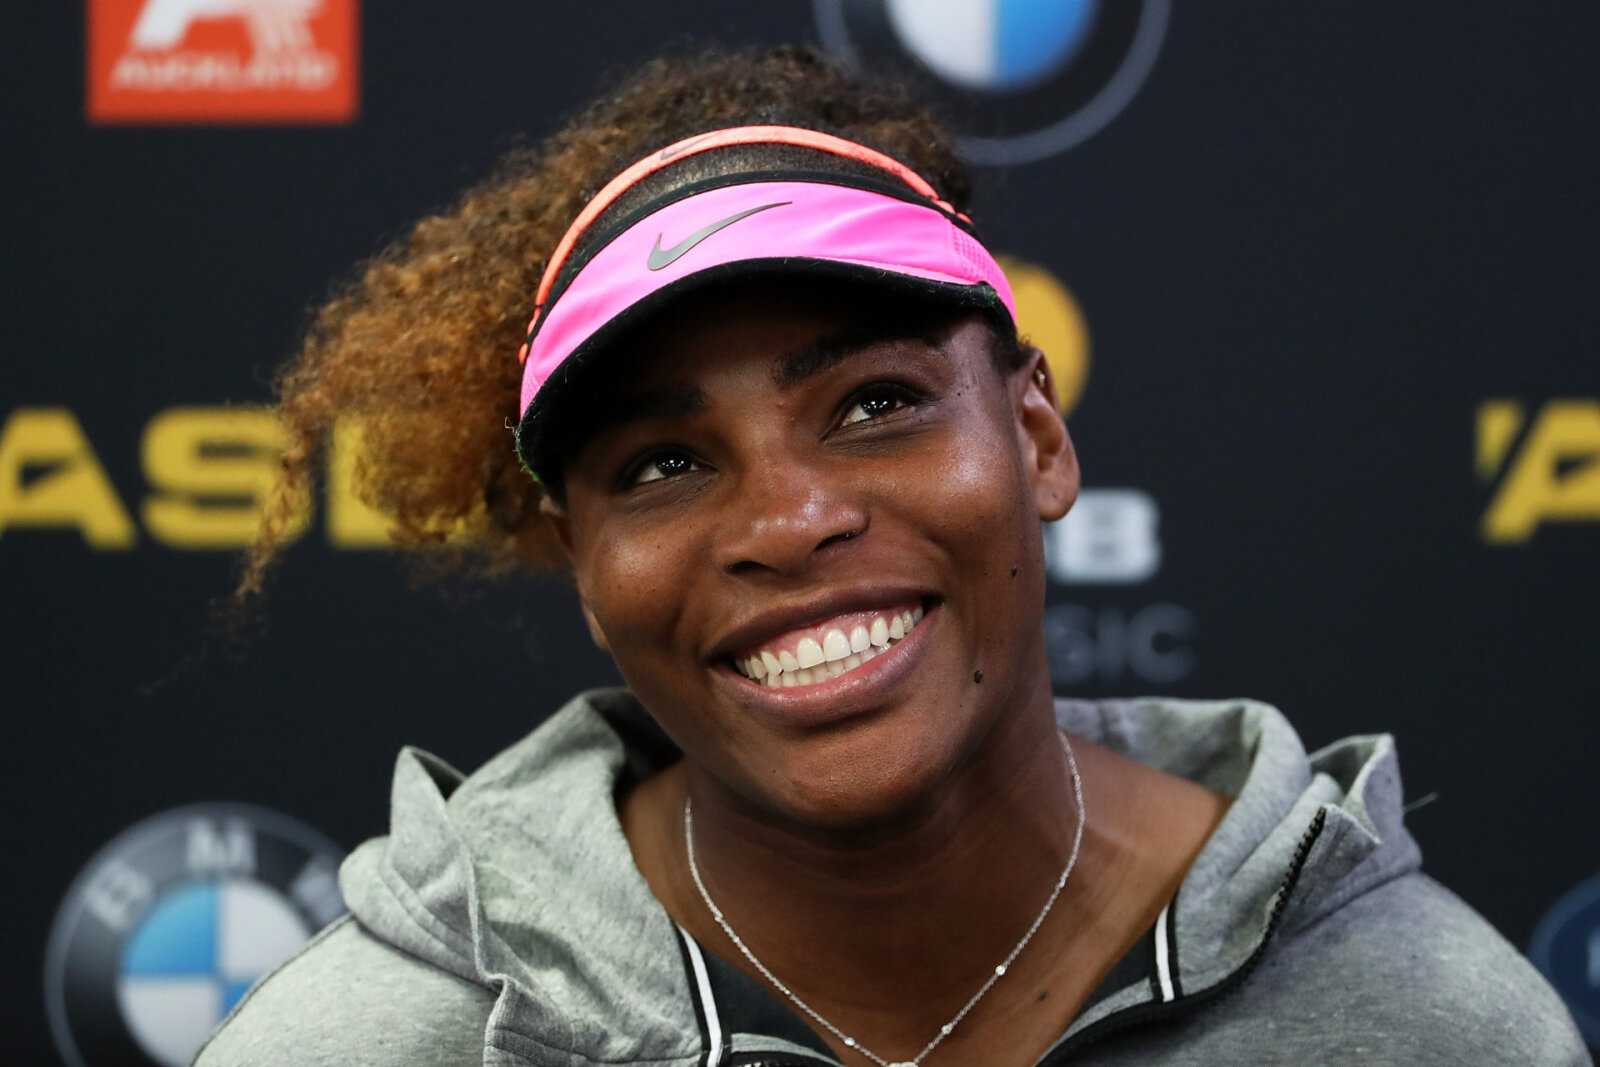 Rencontrez un prodige du tennis de 14 ans qui vise à surpasser Serena Williams